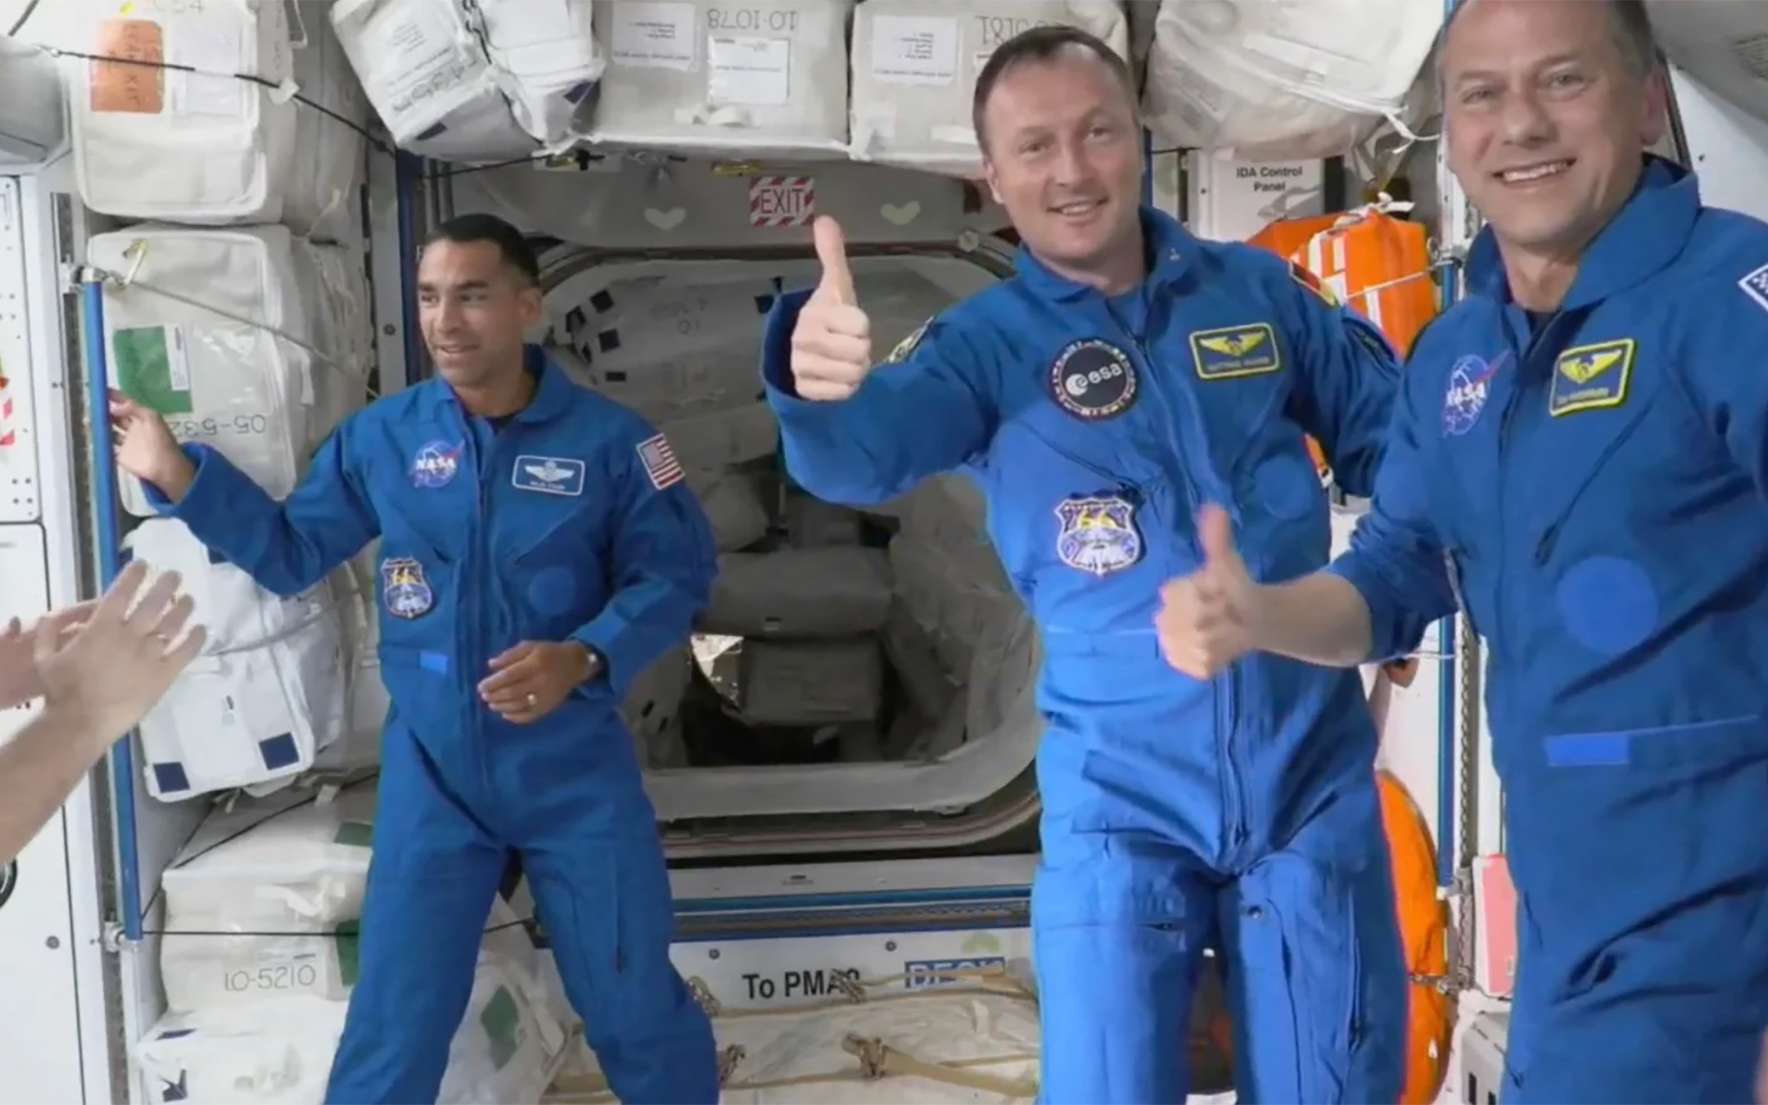 L'astronaute européen Matthias Maurer, entre deux astronautes de la Nasa, est arrivé en pleine forme et tout souriant à bord de la Station spatiale internationale.